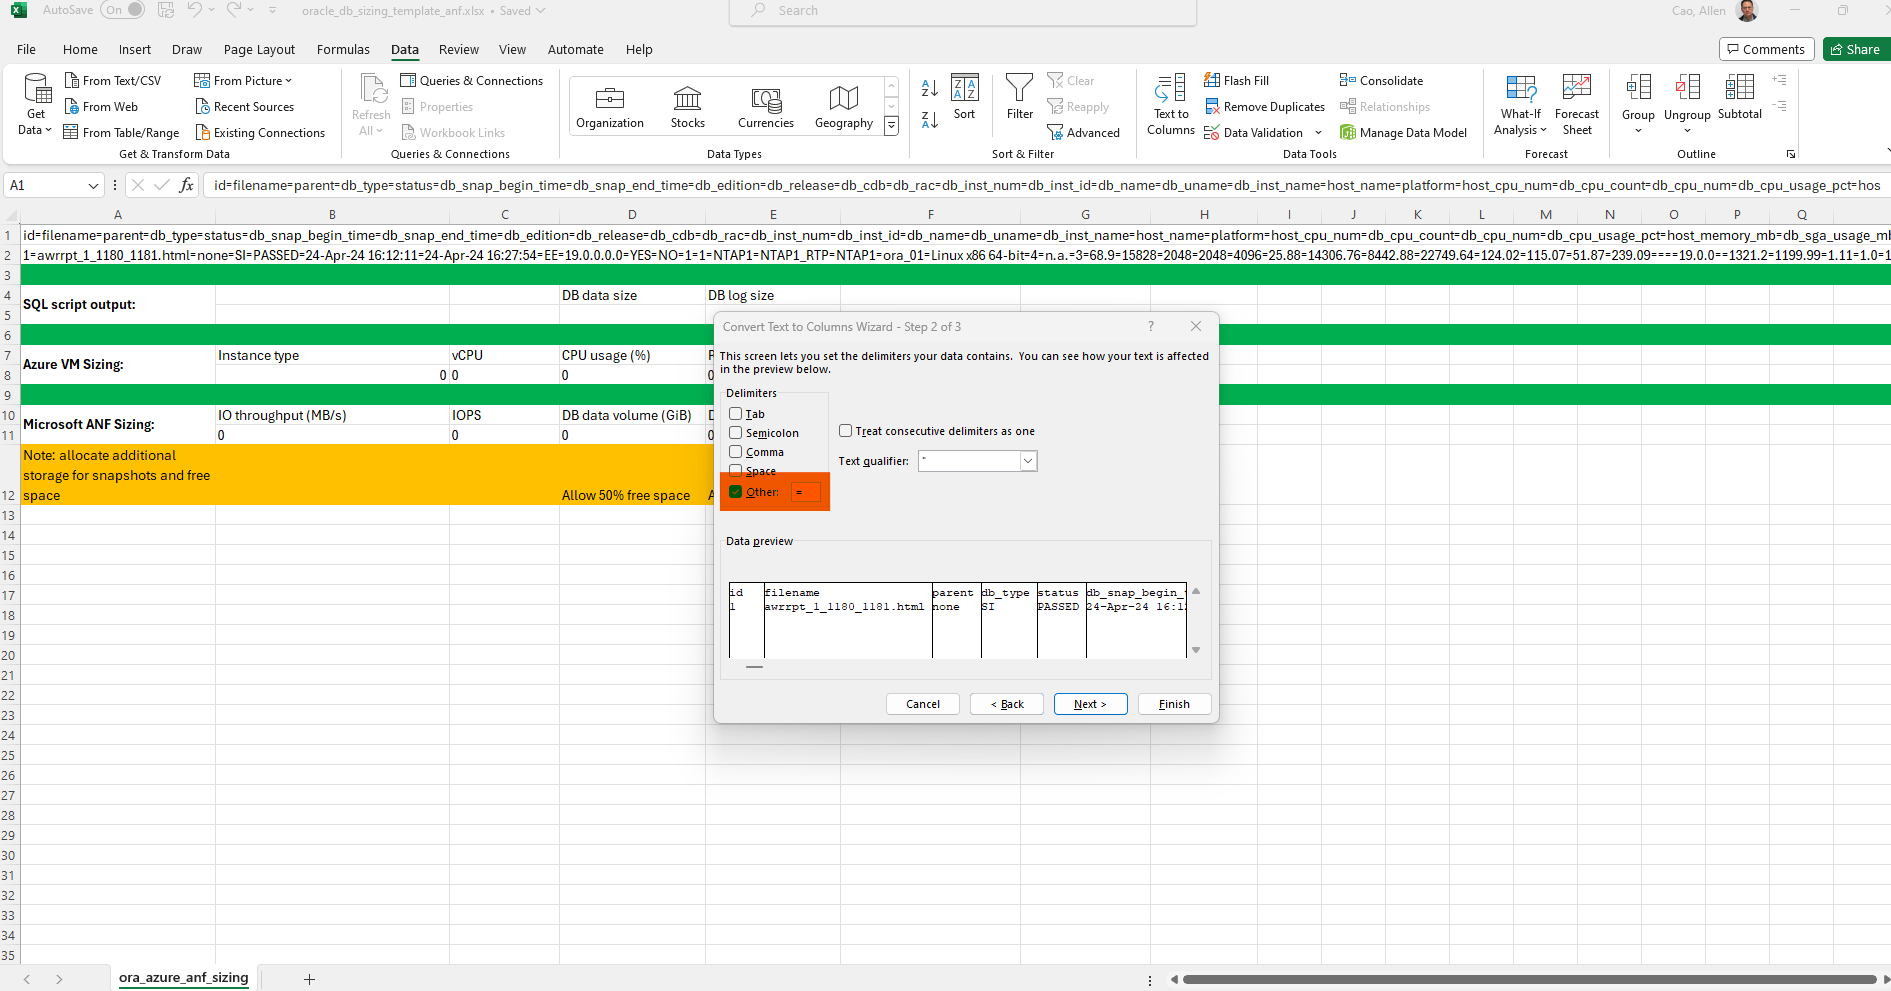 此影像提供 Excel 範本的螢幕擷取畫面、以供 Oracle 調整規模